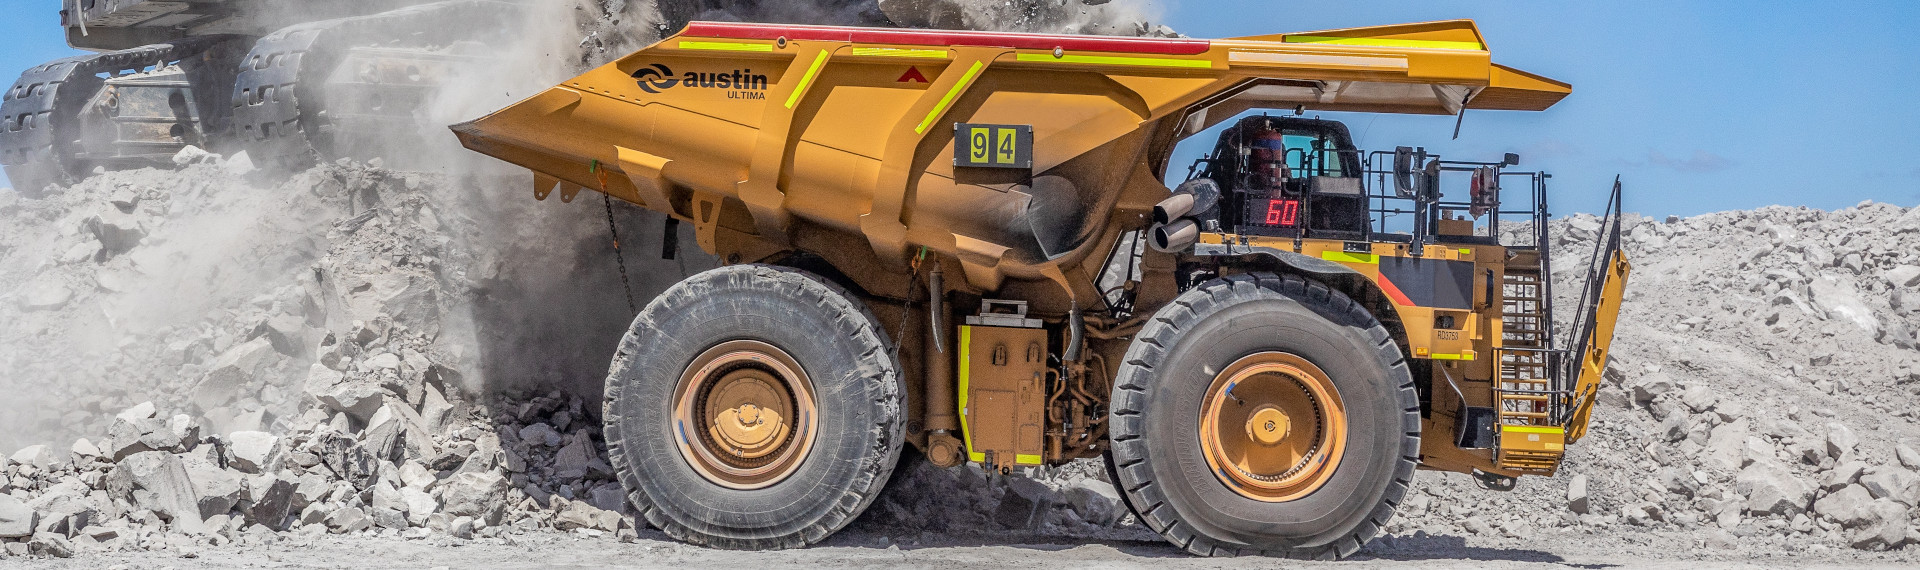 Le gigantesque camion minier d'Austin pèse 25 % de moins grâce à Hardox® 500 Tuf